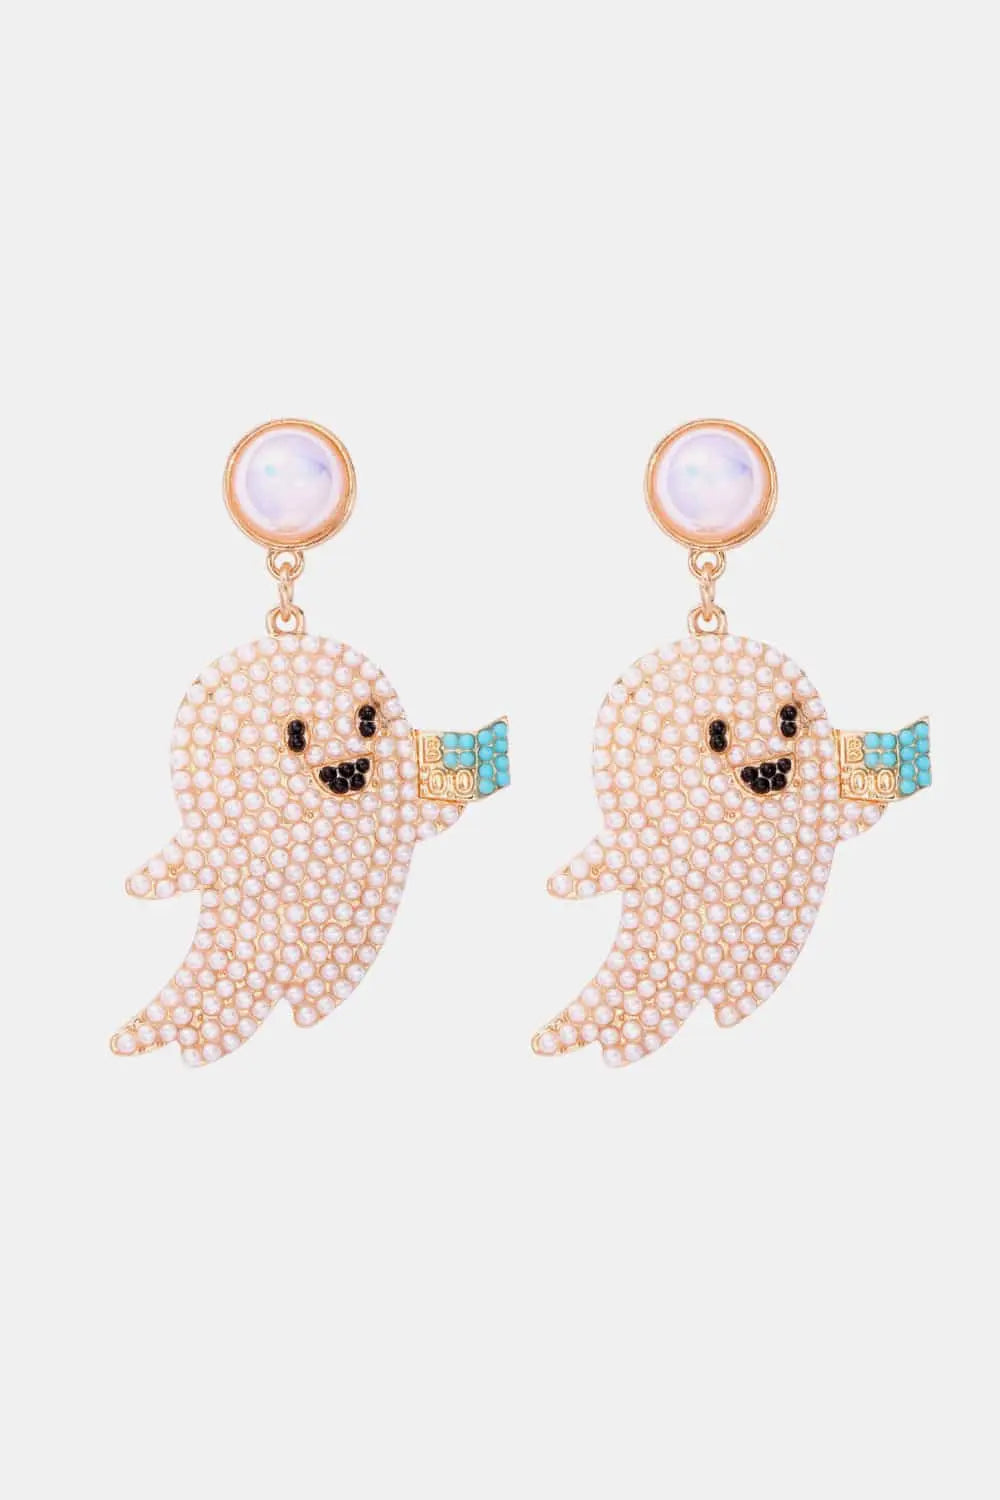 Ghost Shape Synthetic Pearl Dangle Earrings - Scarlett's Riverside Boutique 